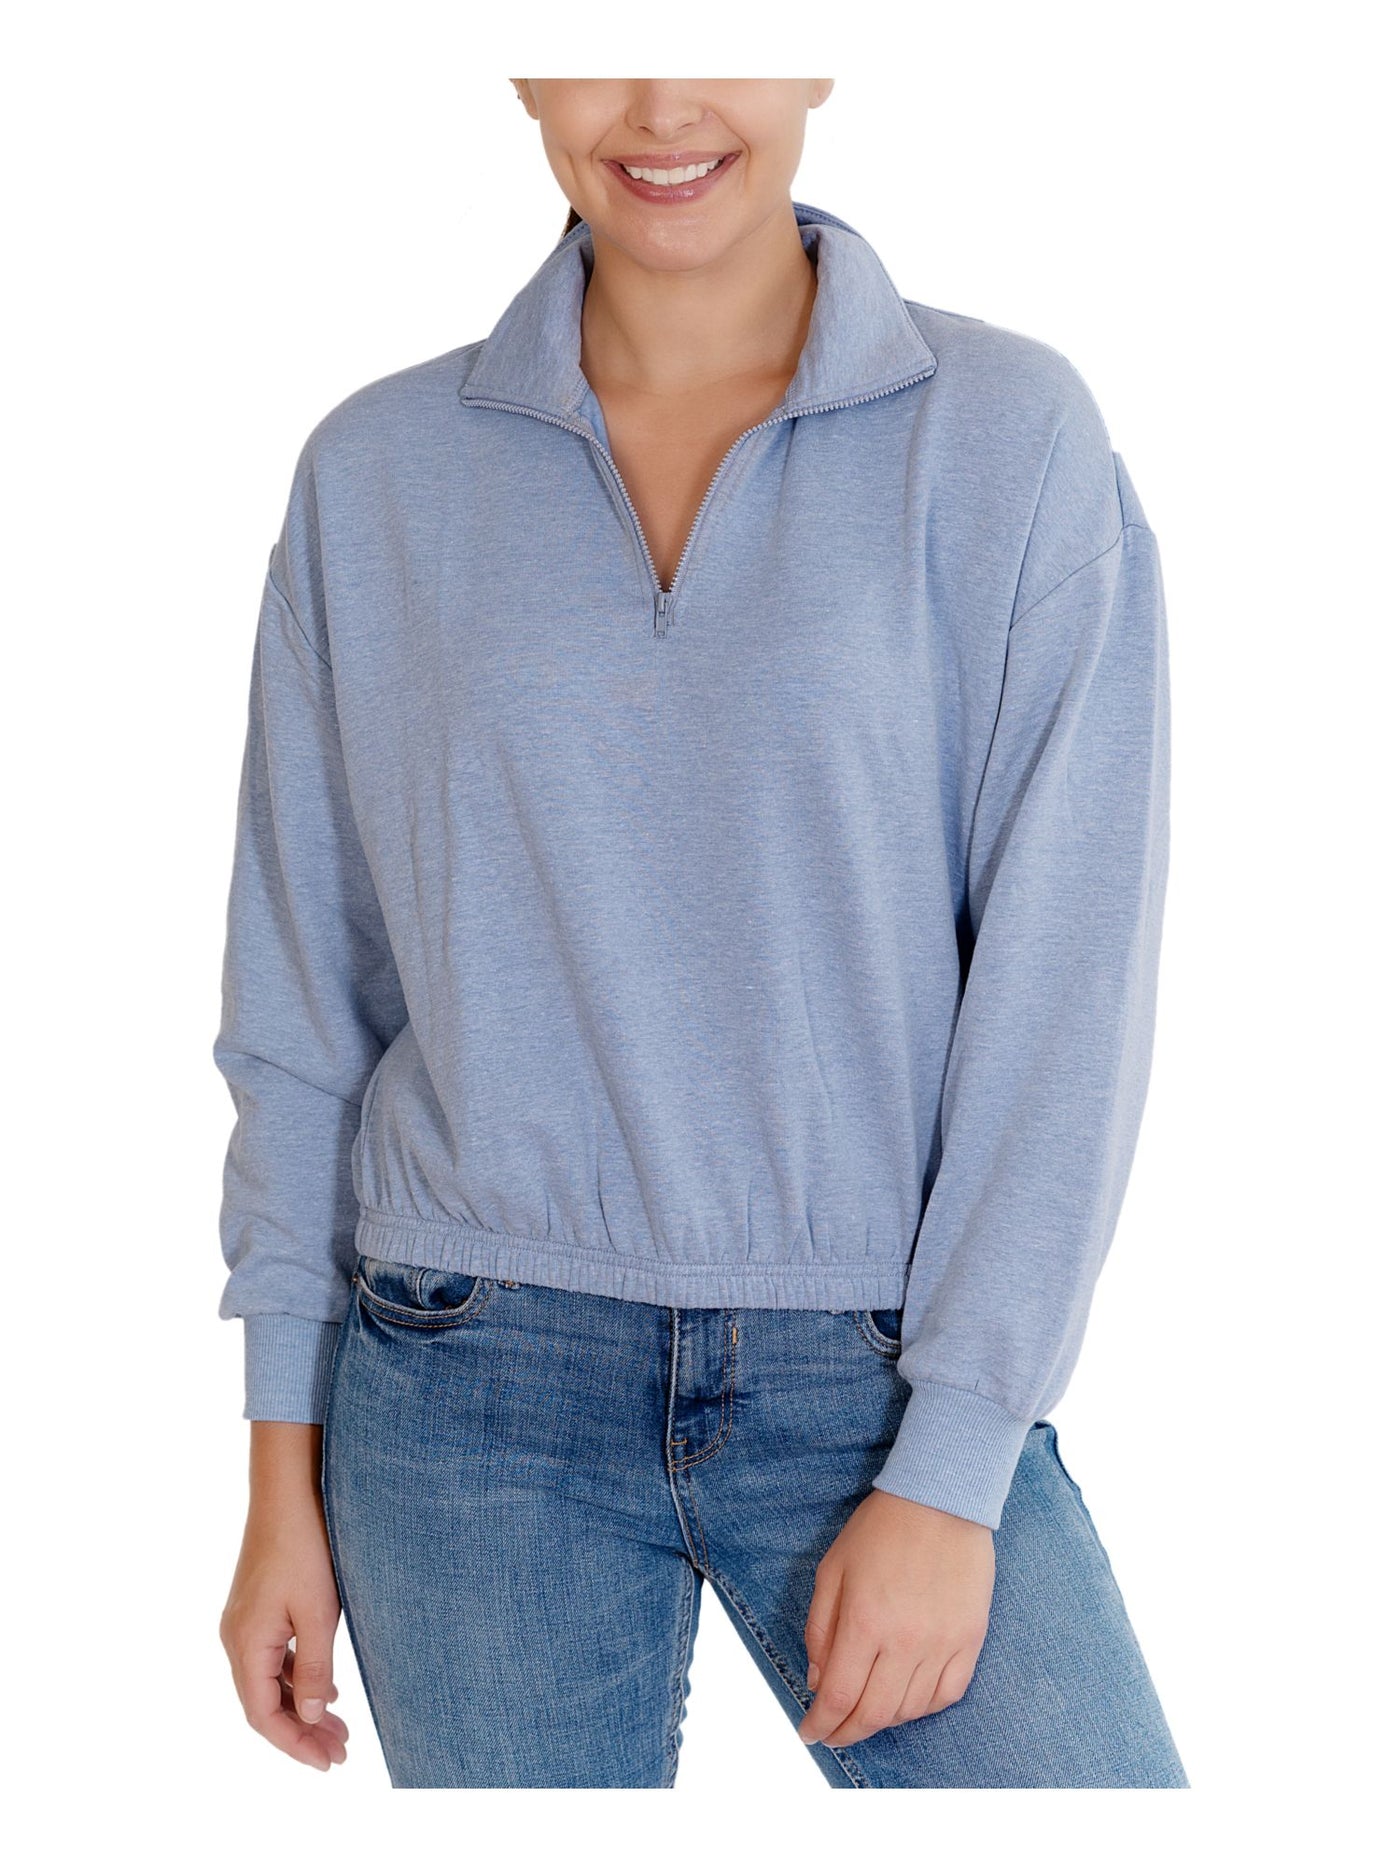 REBELLIOUS ONE Womens Light Blue Long Sleeve Zip Neck Sweater Juniors XL